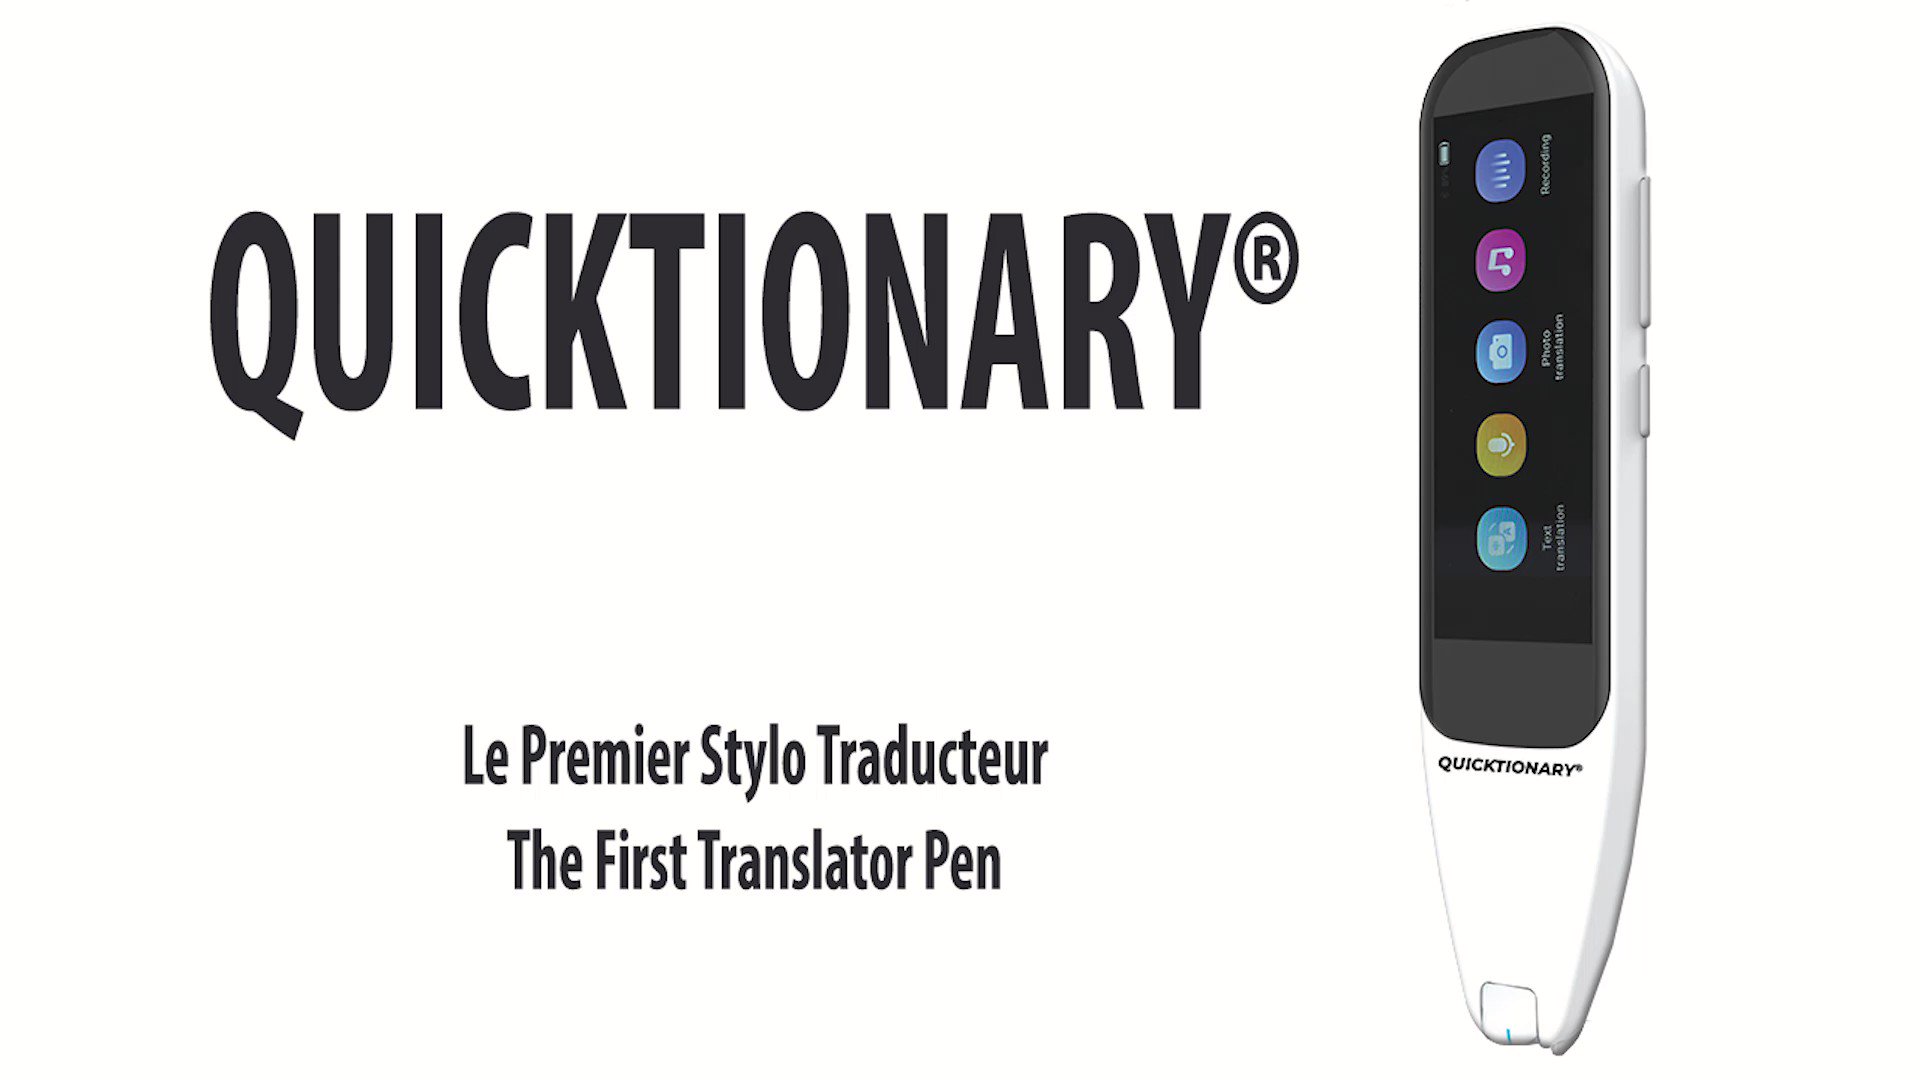 Lexibook on X: Découvrez Quicktionary® , le tout nouveau traducteur  intelligent qui vous permet de traduire dans la langue de votre choix,  jusqu'à 112 langues ! Plus d'info dans notre newsletter